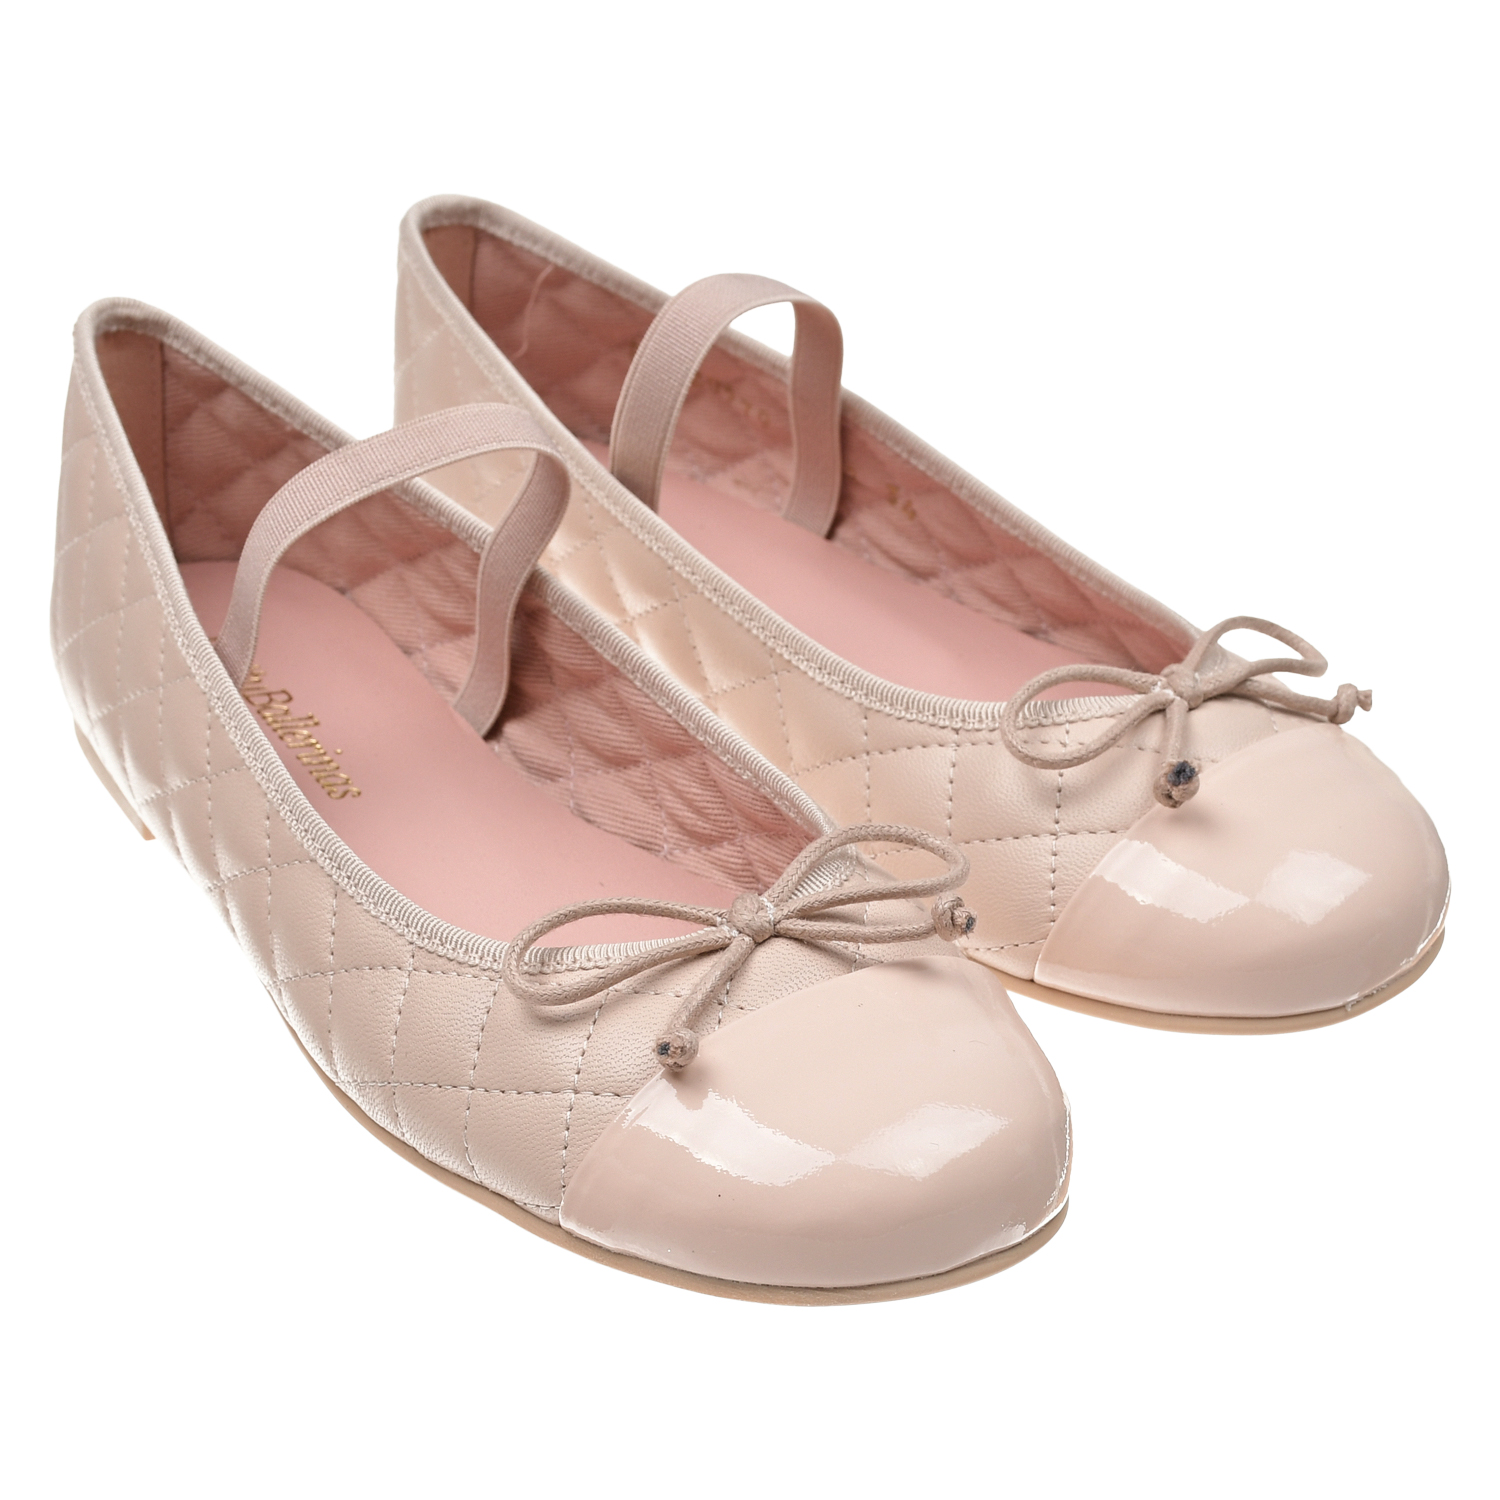 Пудровые туфли со стеганой отделкой Pretty Ballerinas белые кожаные туфли с бантом и сердечком pretty ballerinas